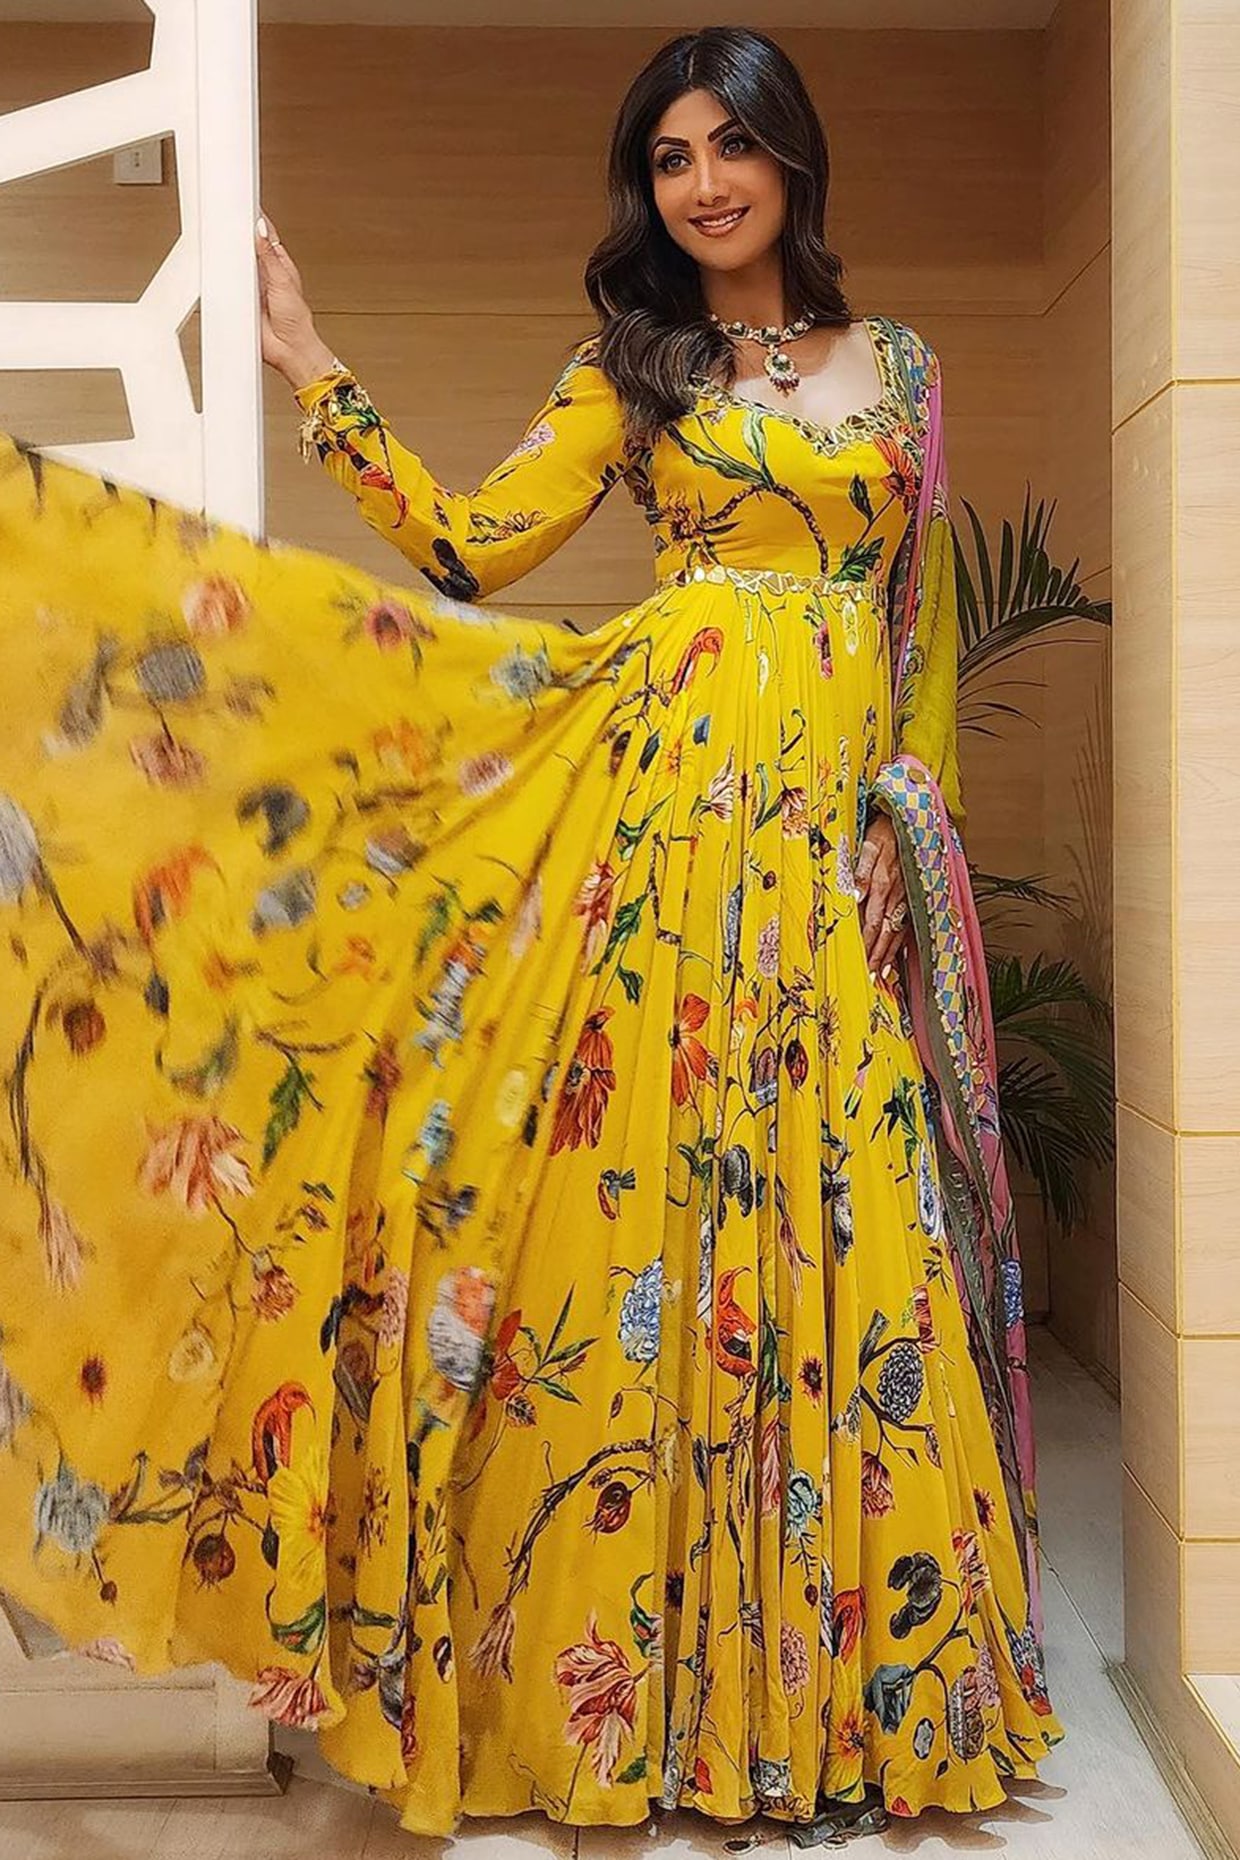 Shilpa Shetty Looks Chic In A Stunning Lehenga